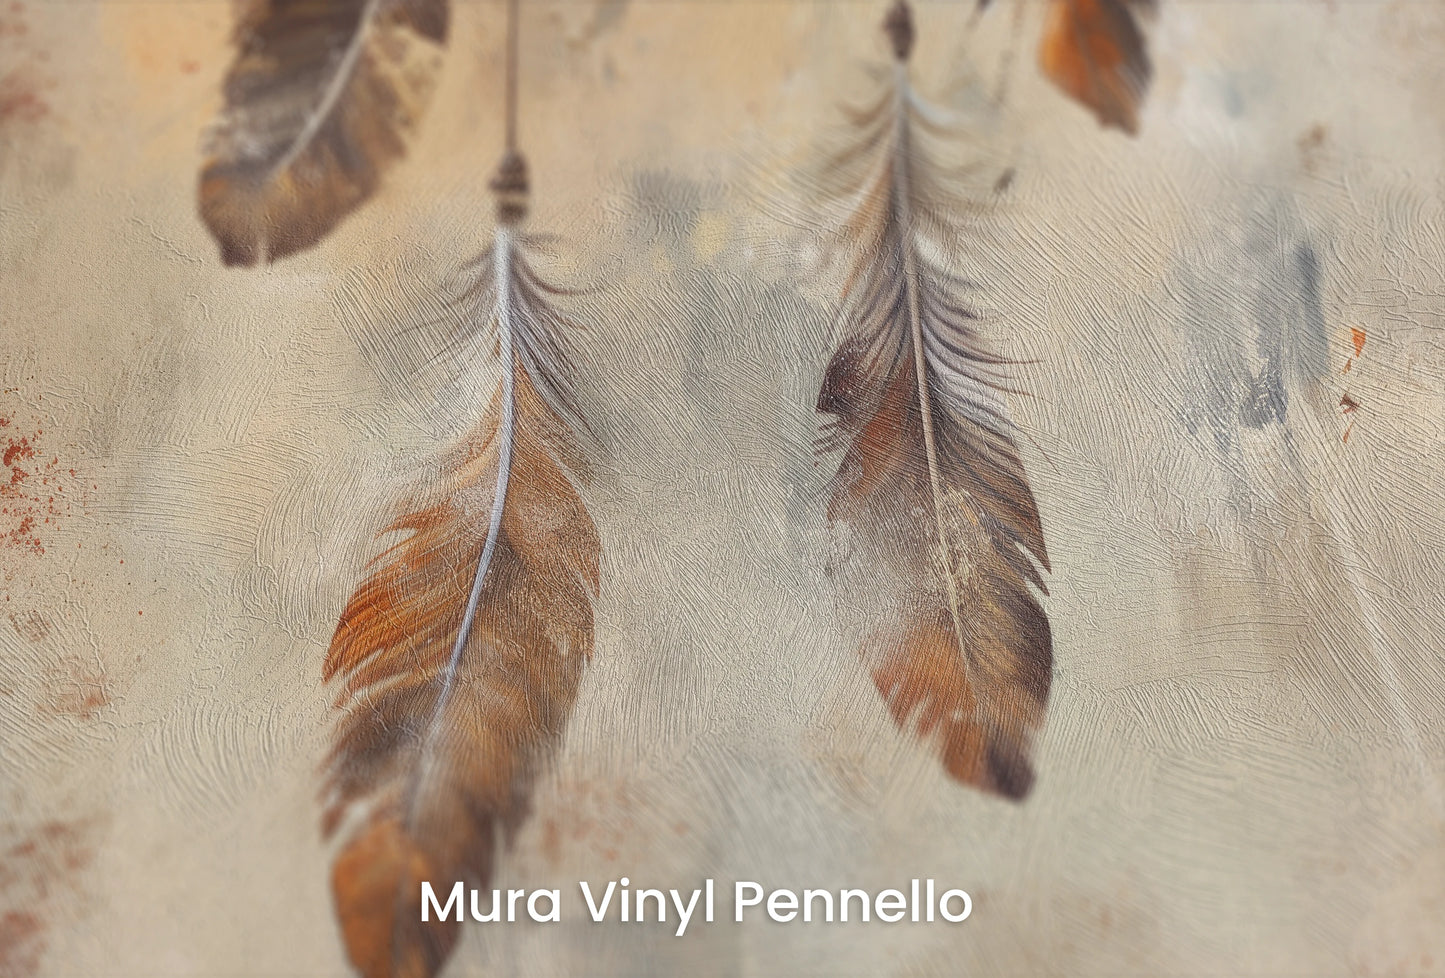 Zbliżenie na artystyczną fototapetę o nazwie Terra Harmony na podłożu Mura Vinyl Pennello - faktura pociągnięć pędzla malarskiego.